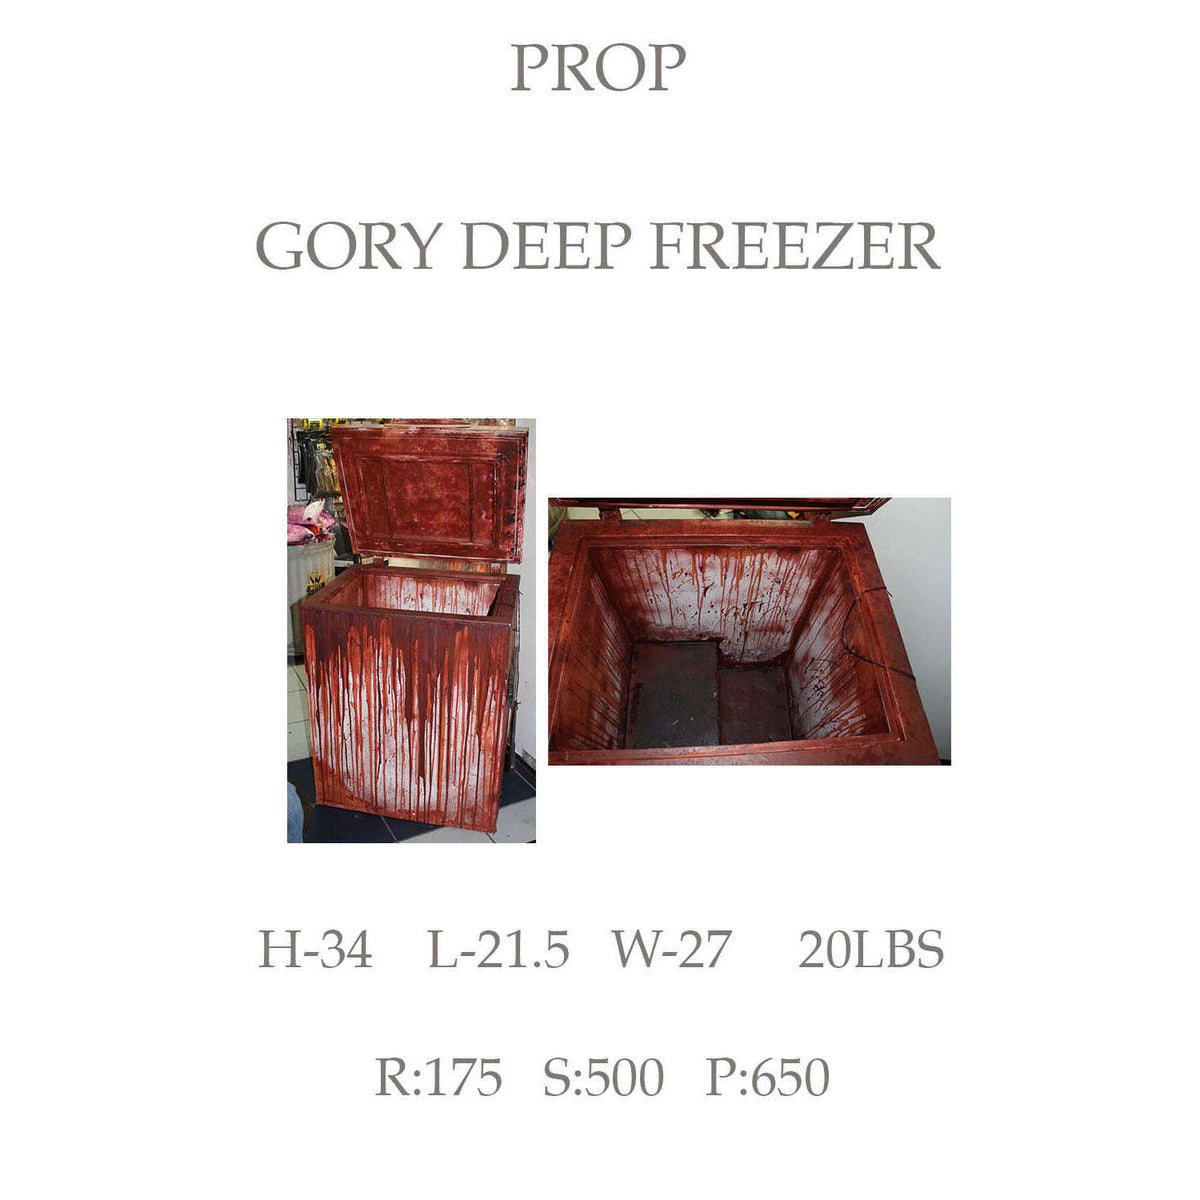 Gory Deep Freezer - High End Prop